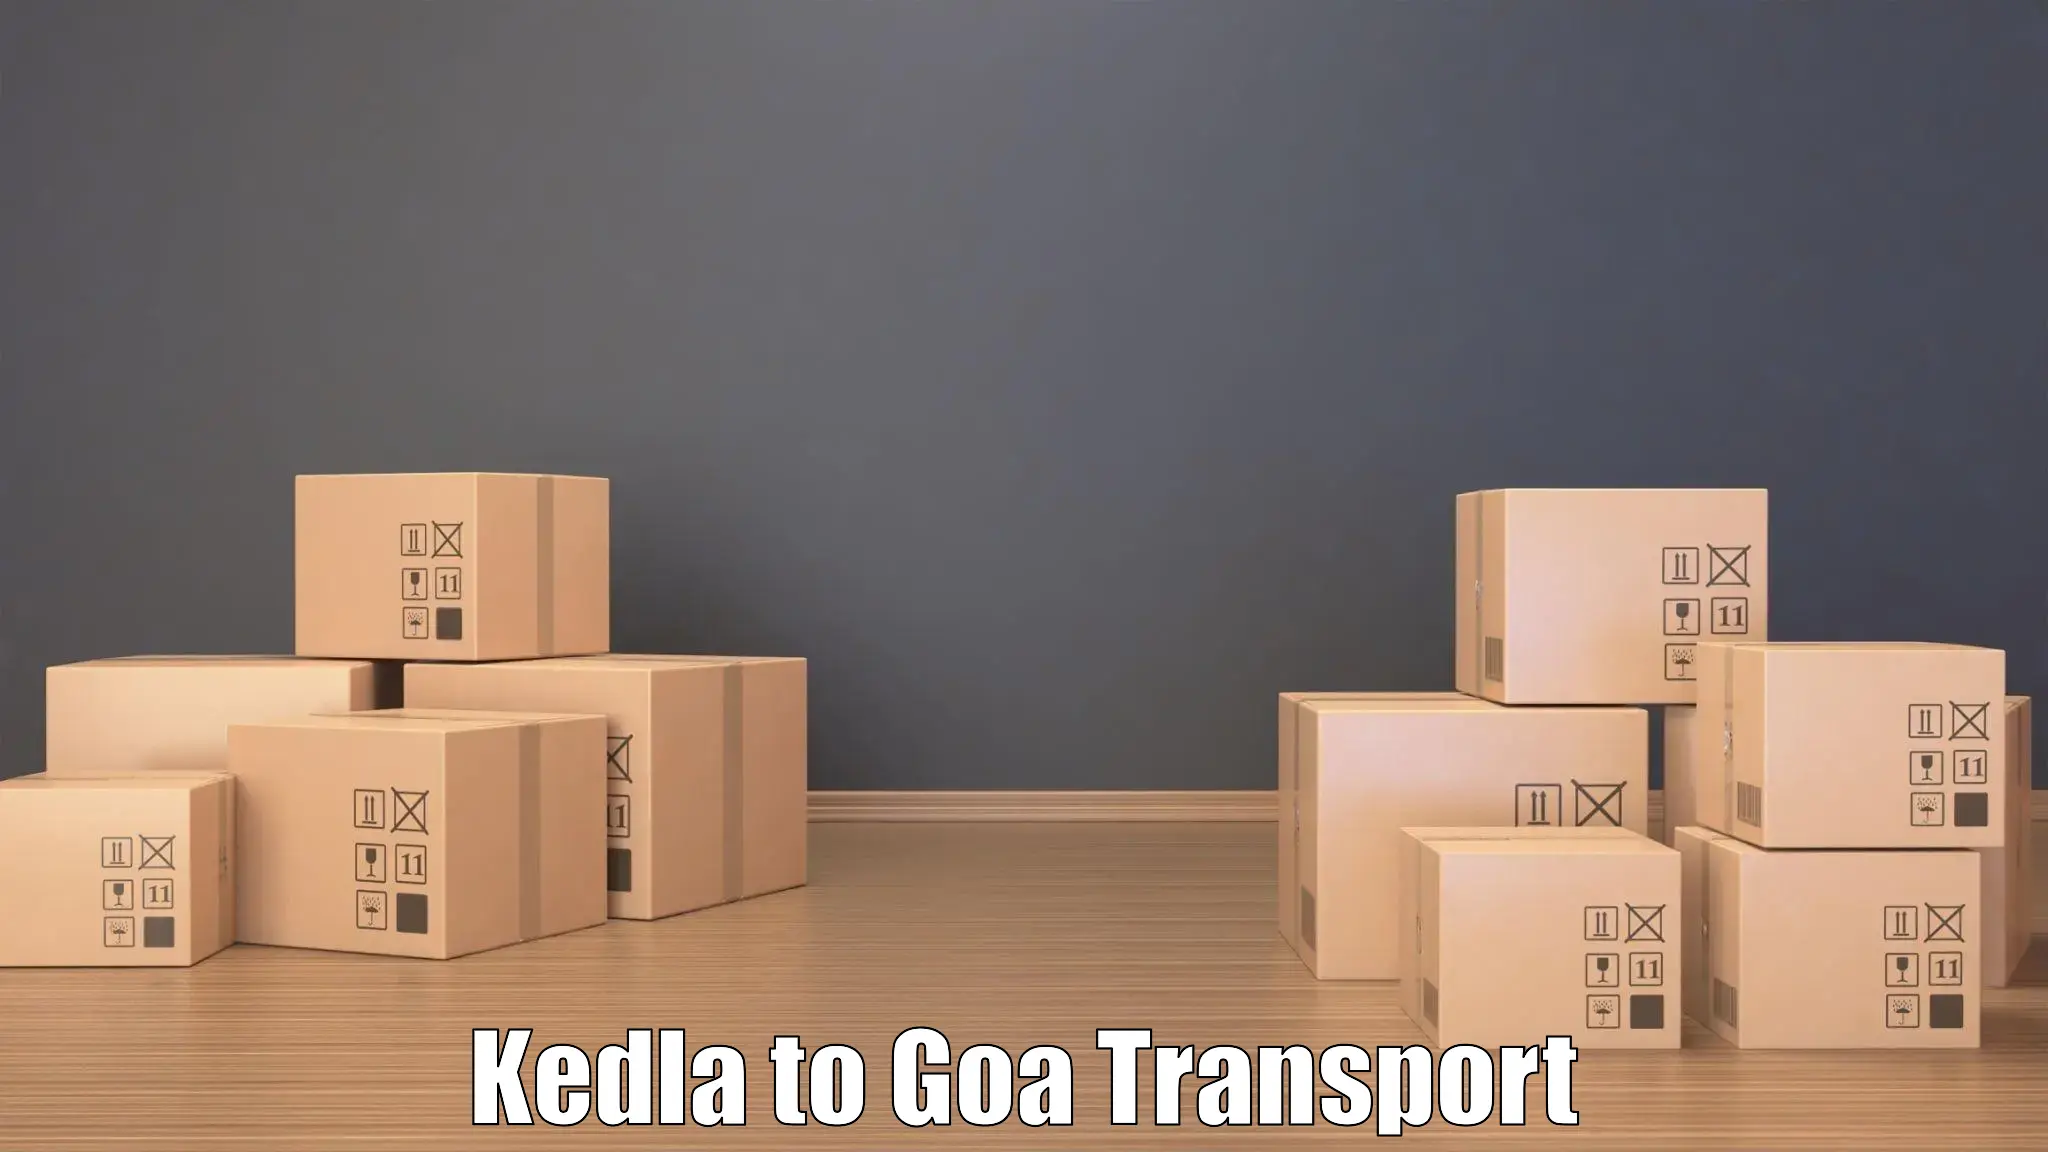 Luggage transport services Kedla to Goa